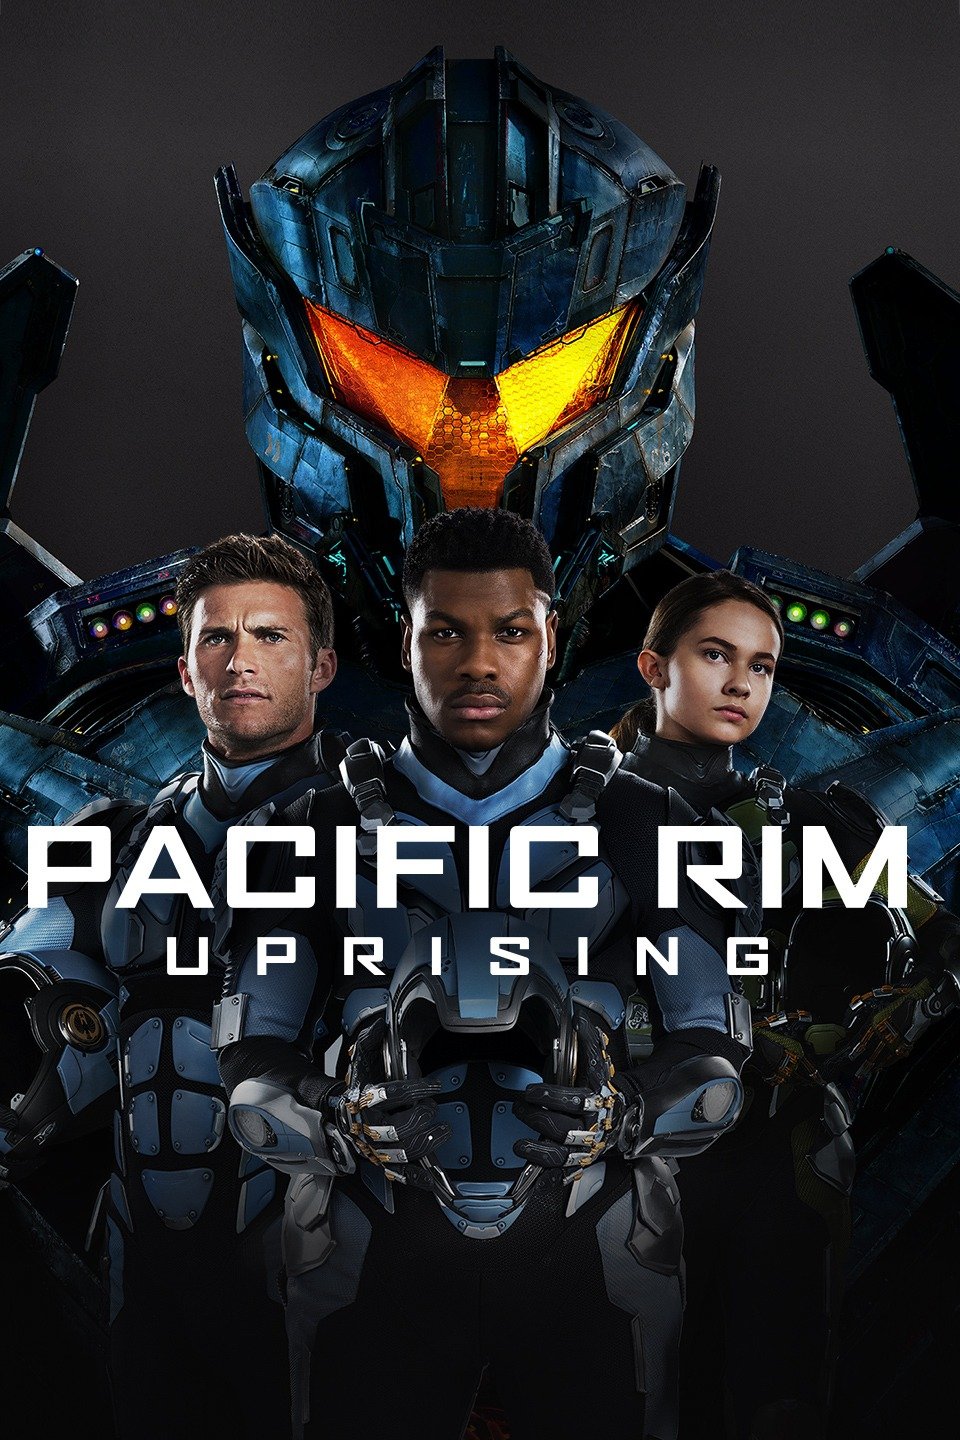 [MINI Super-HQ] Pacific Rim: Uprising (2018) แปซิฟิค ริม 2: ปฏิวัติพลิกโลก [1080p] [พากย์ไทย 5.1 + เสียงอังกฤษ DTS] [บรรยายไทย + อังกฤษ] [เสียงไทย + ซับไทย] [PANDAFILE]